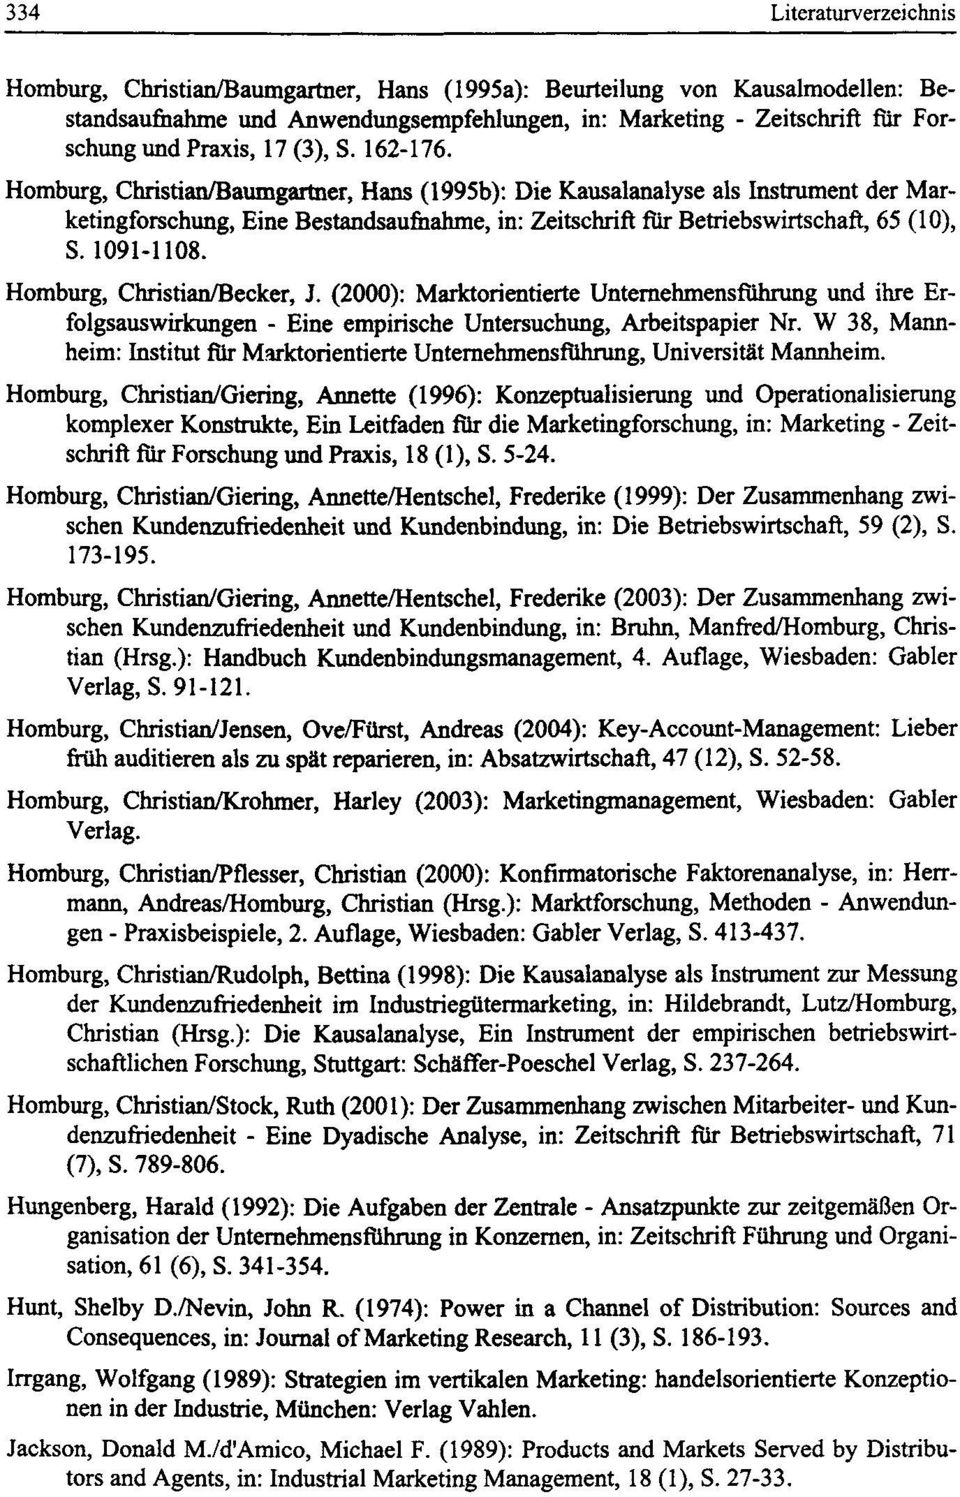 Homburg, Christian/Baumgartner, Hans (1995b): Die Kausalanalyse als Instrument der Marketingforschung, Eine Bestandsaufiiahme, in: Zeitschrift fur Betriebswirtschaft, 65 (10), S. 1091-1108.